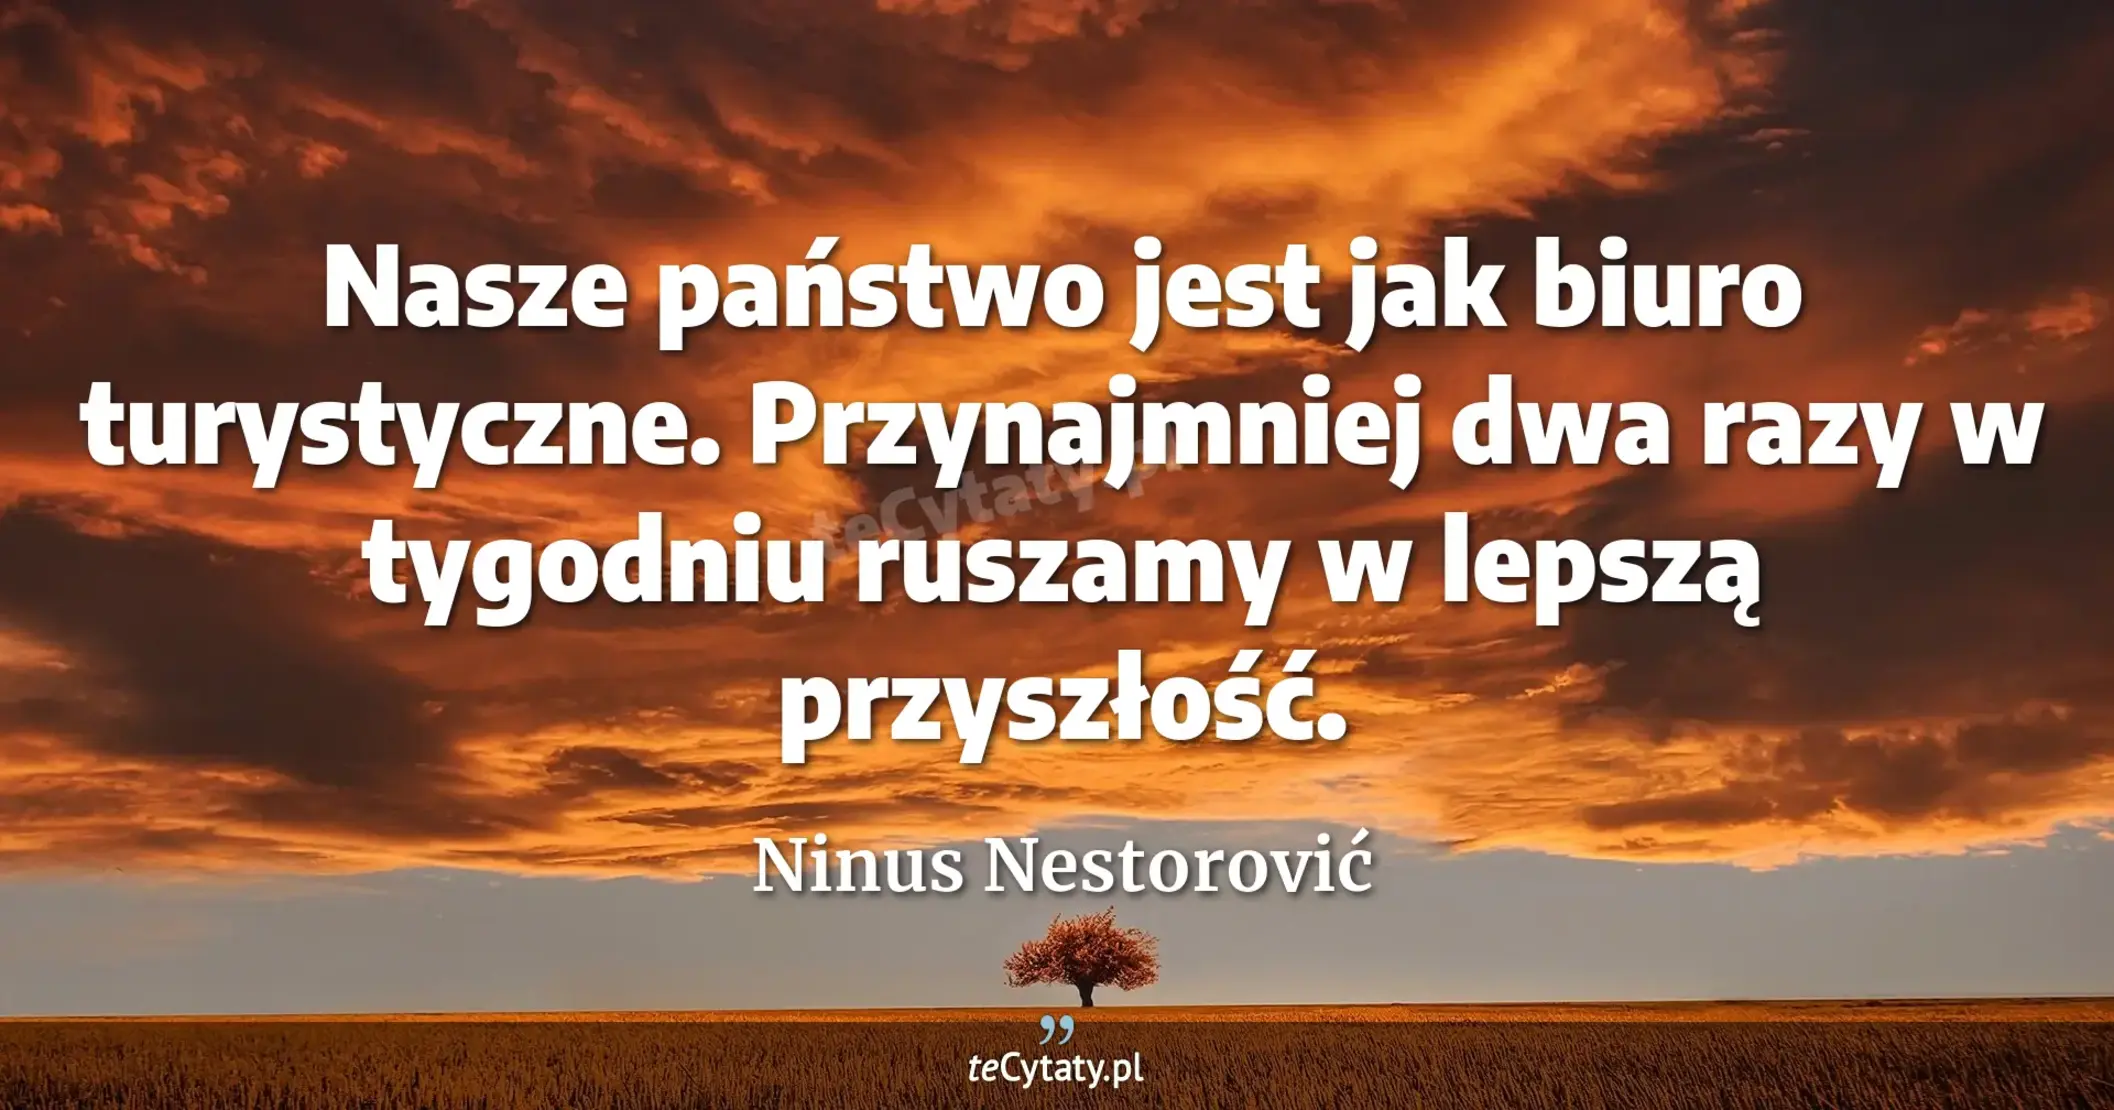 Nasze państwo jest jak biuro turystyczne. Przynajmniej dwa razy w tygodniu ruszamy w lepszą przyszłość. - Ninus Nestorović